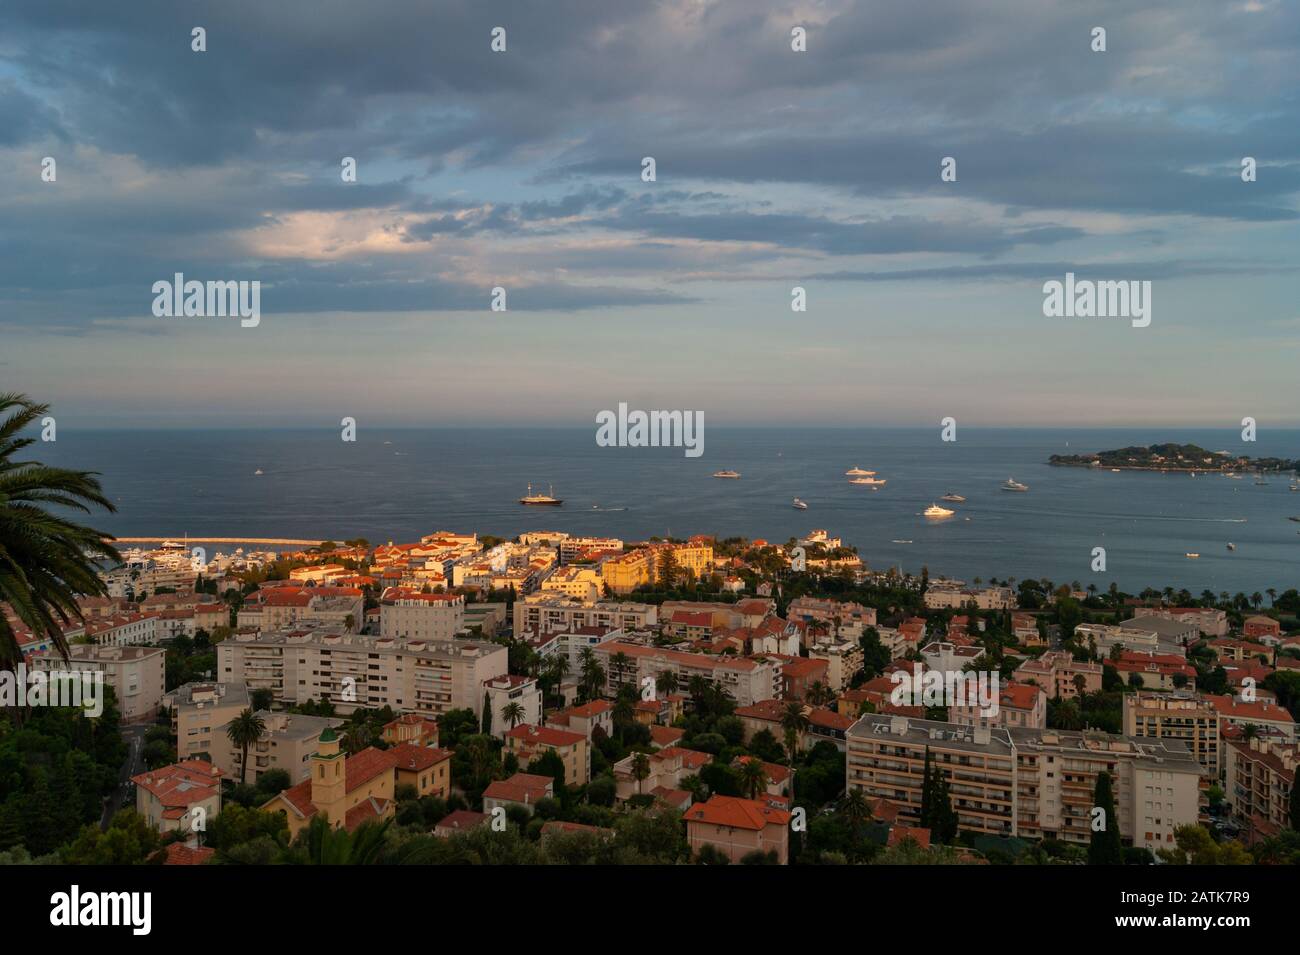 Vue panoramique sur le village côtier méditerranéen de Beaulieu-sur-Mer, Côte d'Azur, Sud de la France, avec le golfe du Cap Ferrat sur la droite Banque D'Images